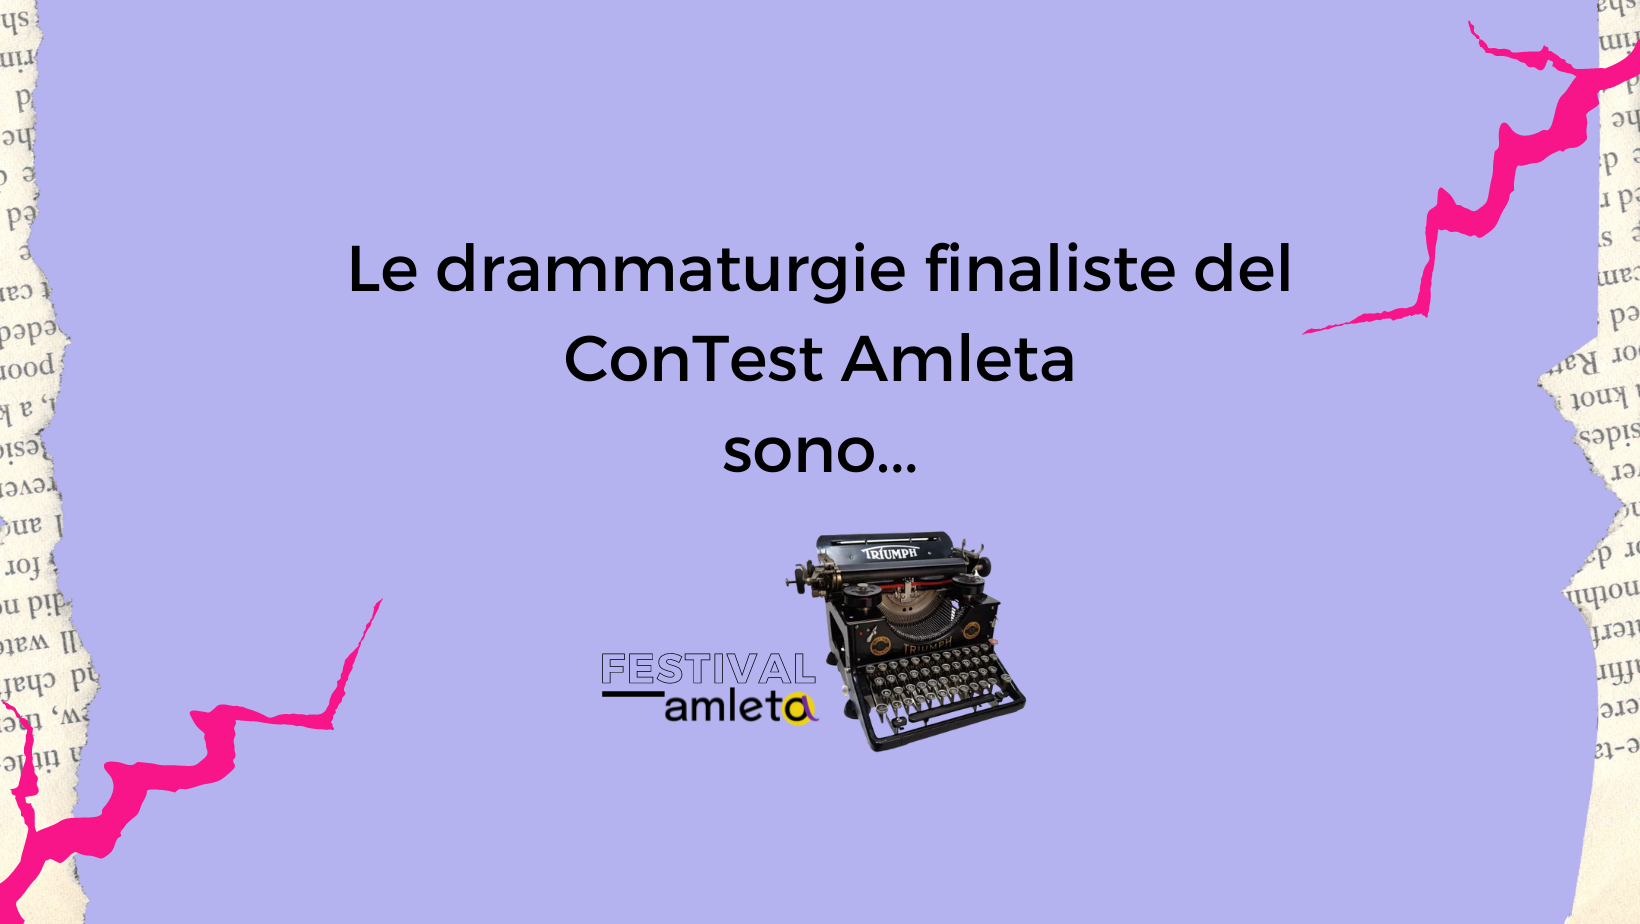 Le tre drammaturgie finaliste del ConTest Amleta